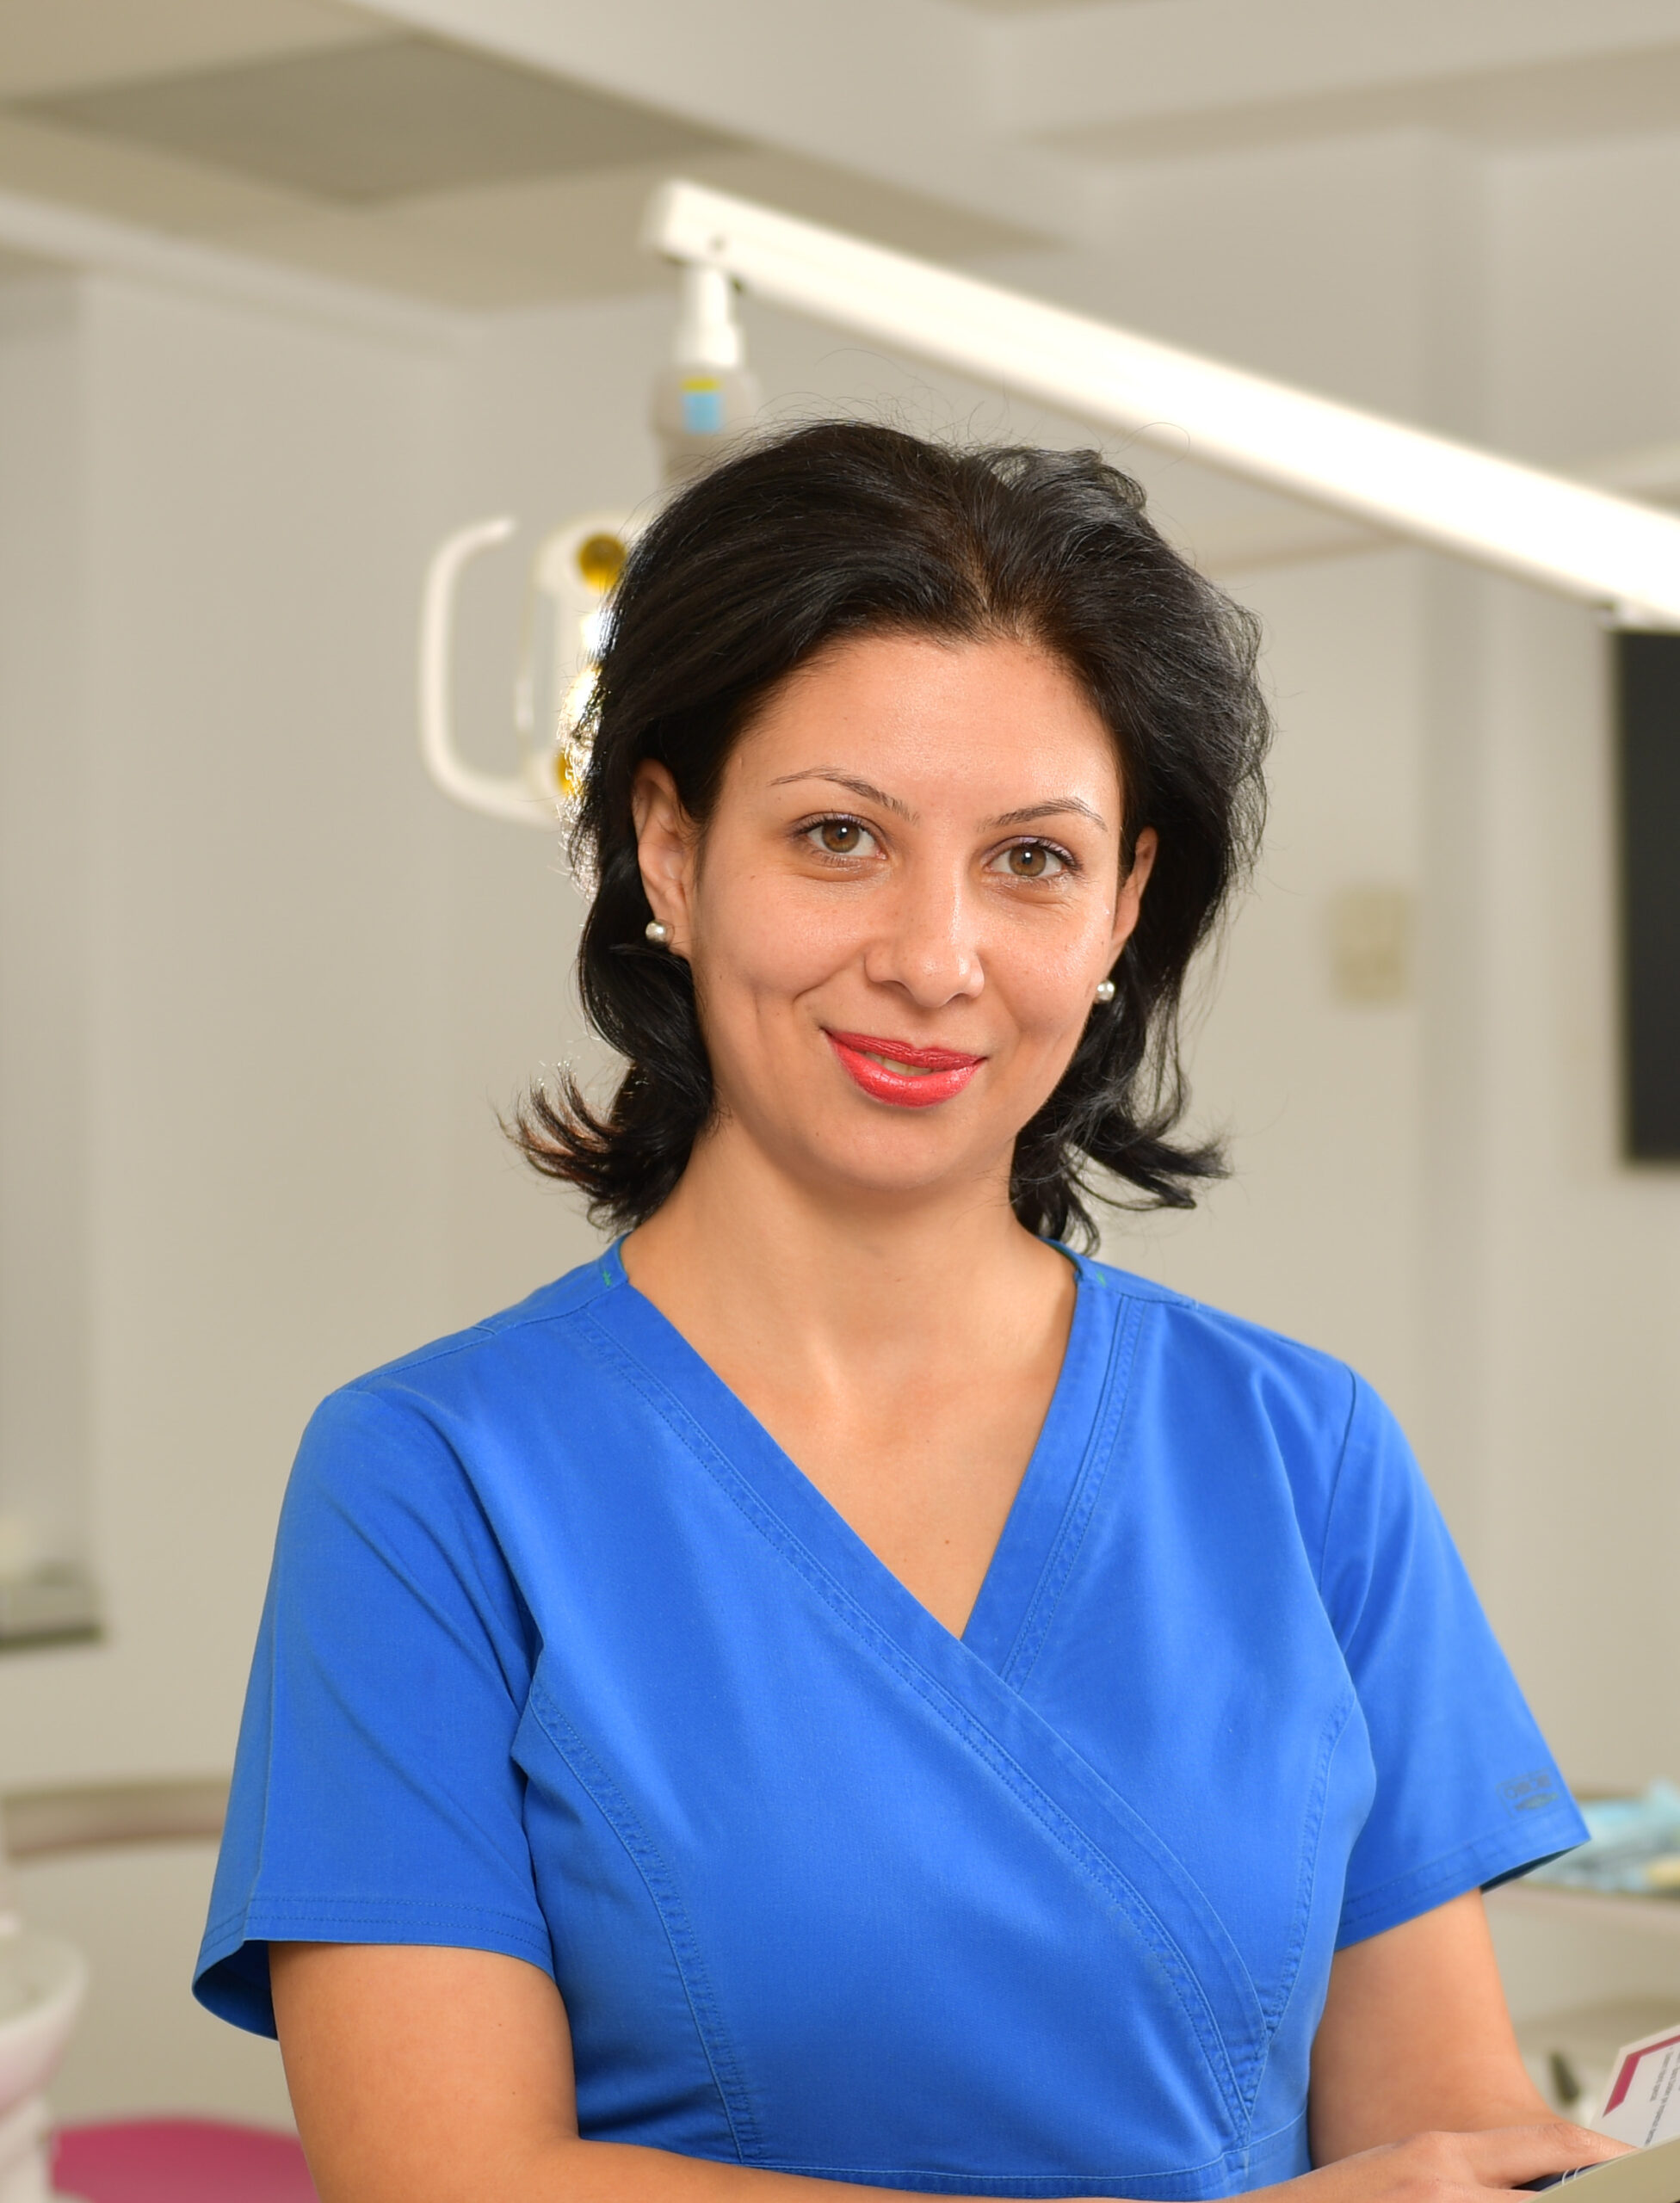 Dr. Iasmin Jarjour